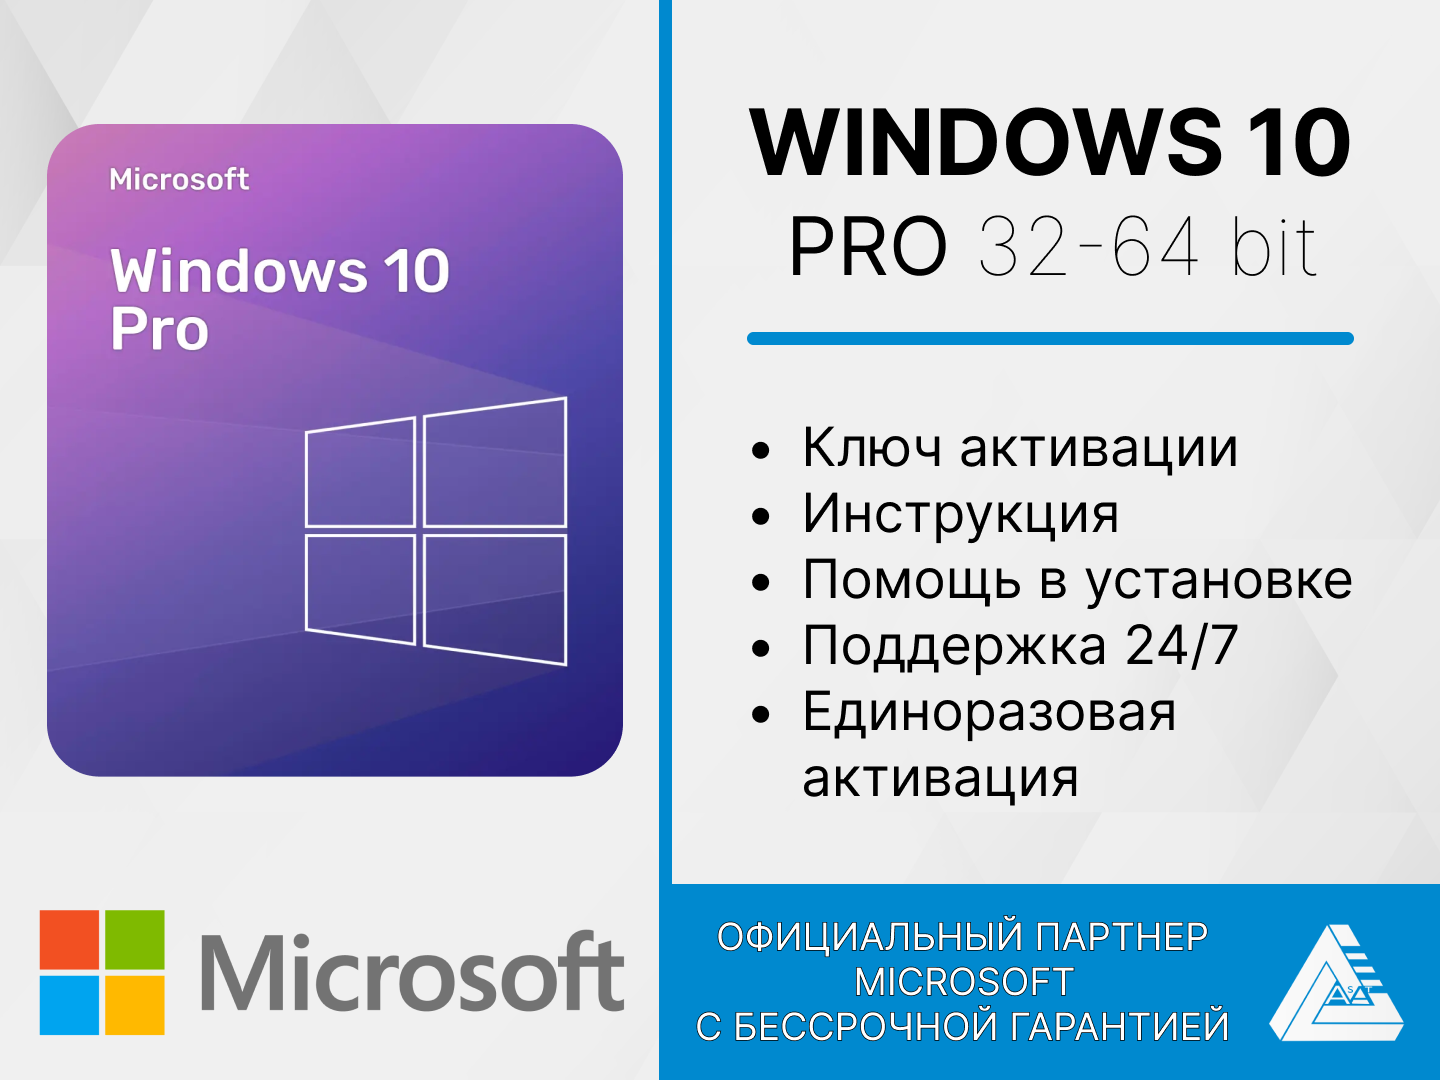 Microsoft Windows 10 PRO для активации. Единоразовая активация. Русский язык.